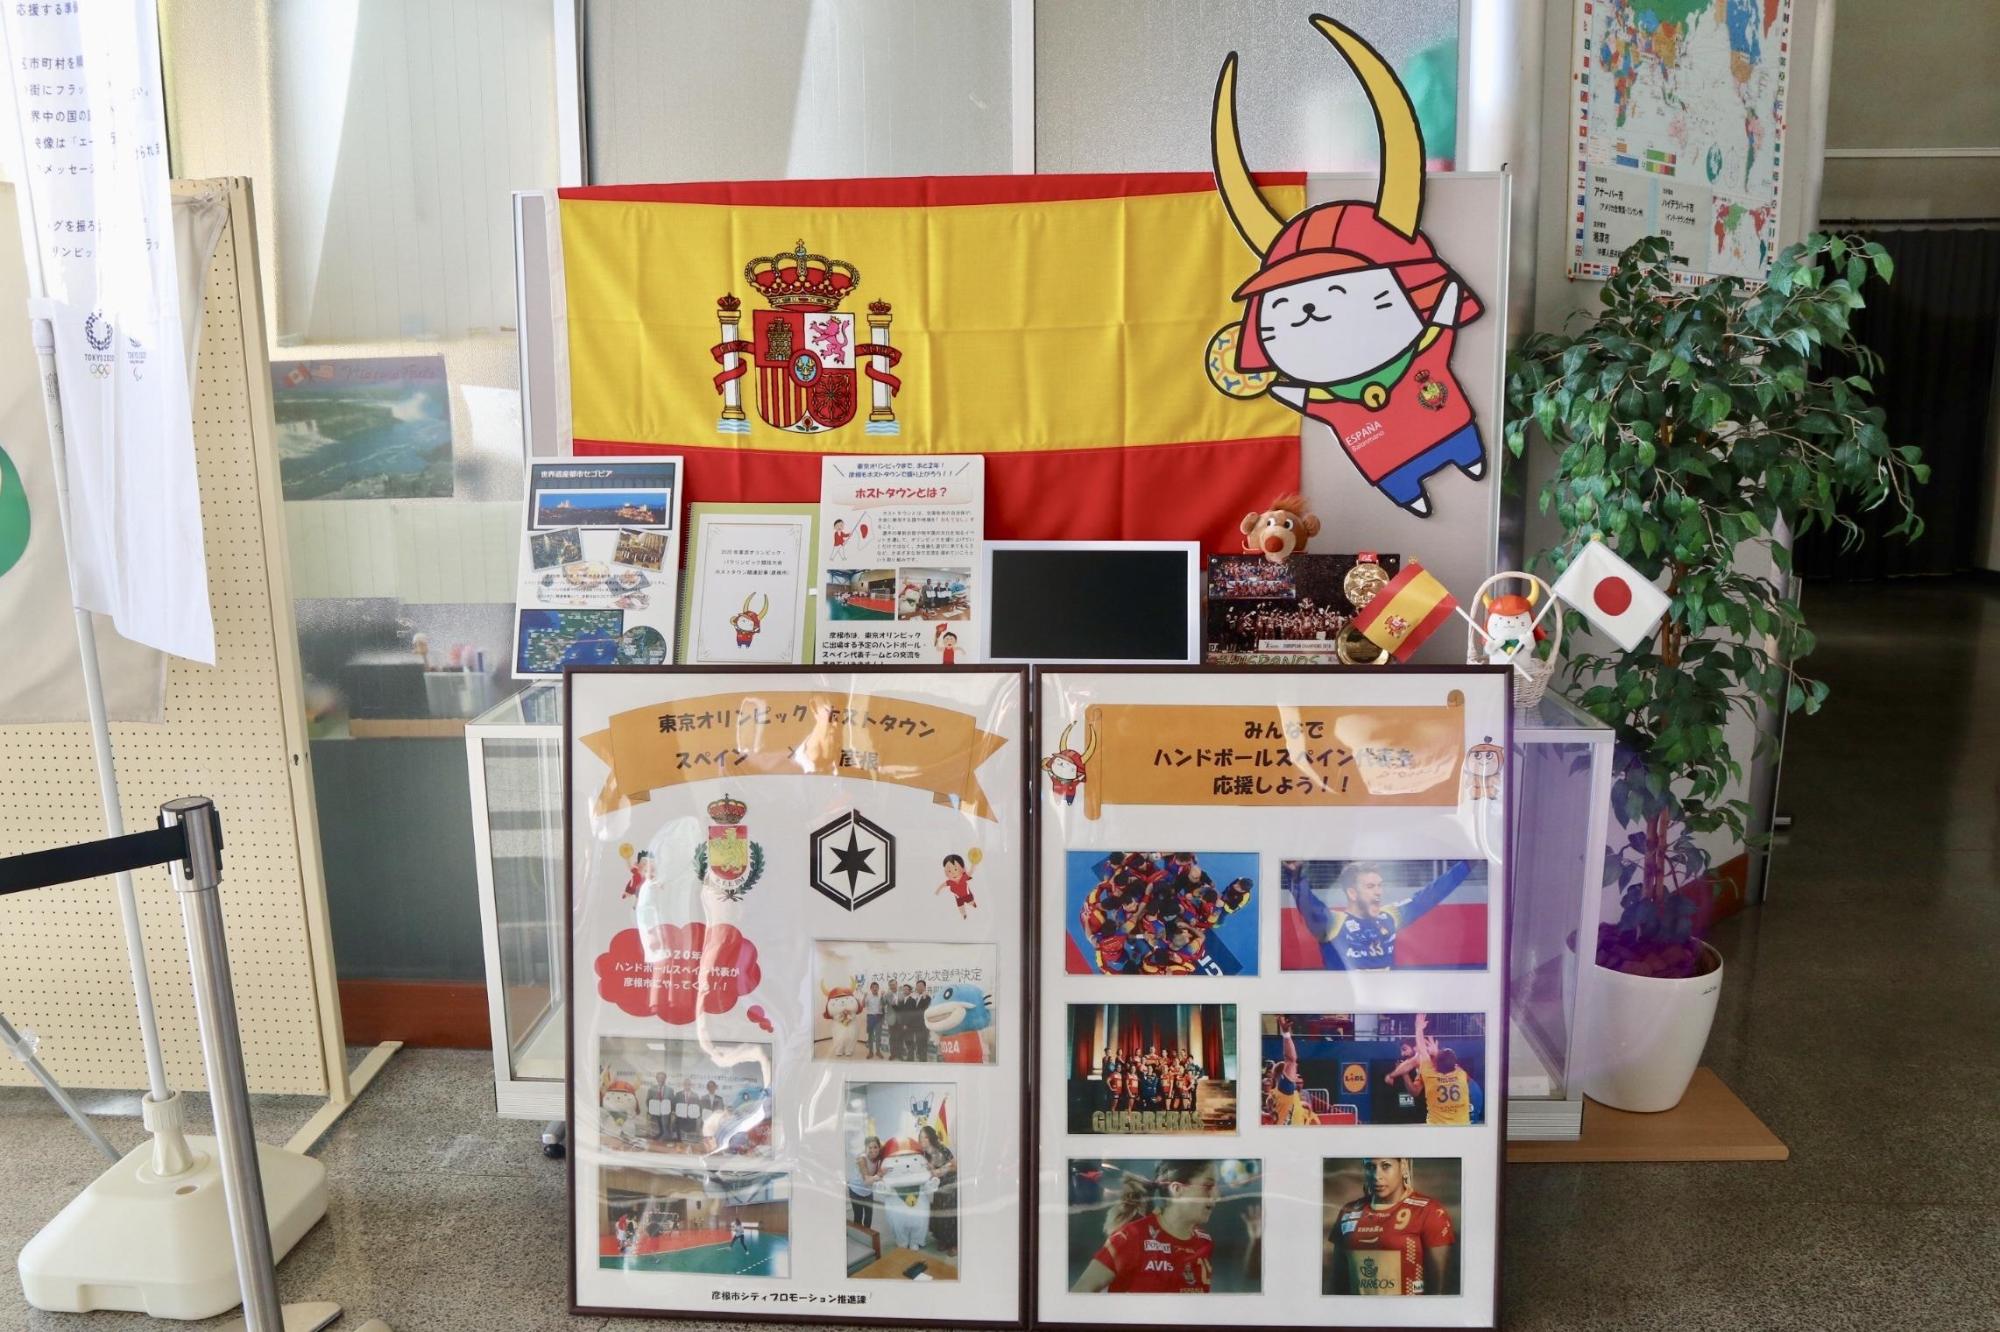 彦根市民開会に並べられたハンドボール・スペイン代表のPR関連商品の写真